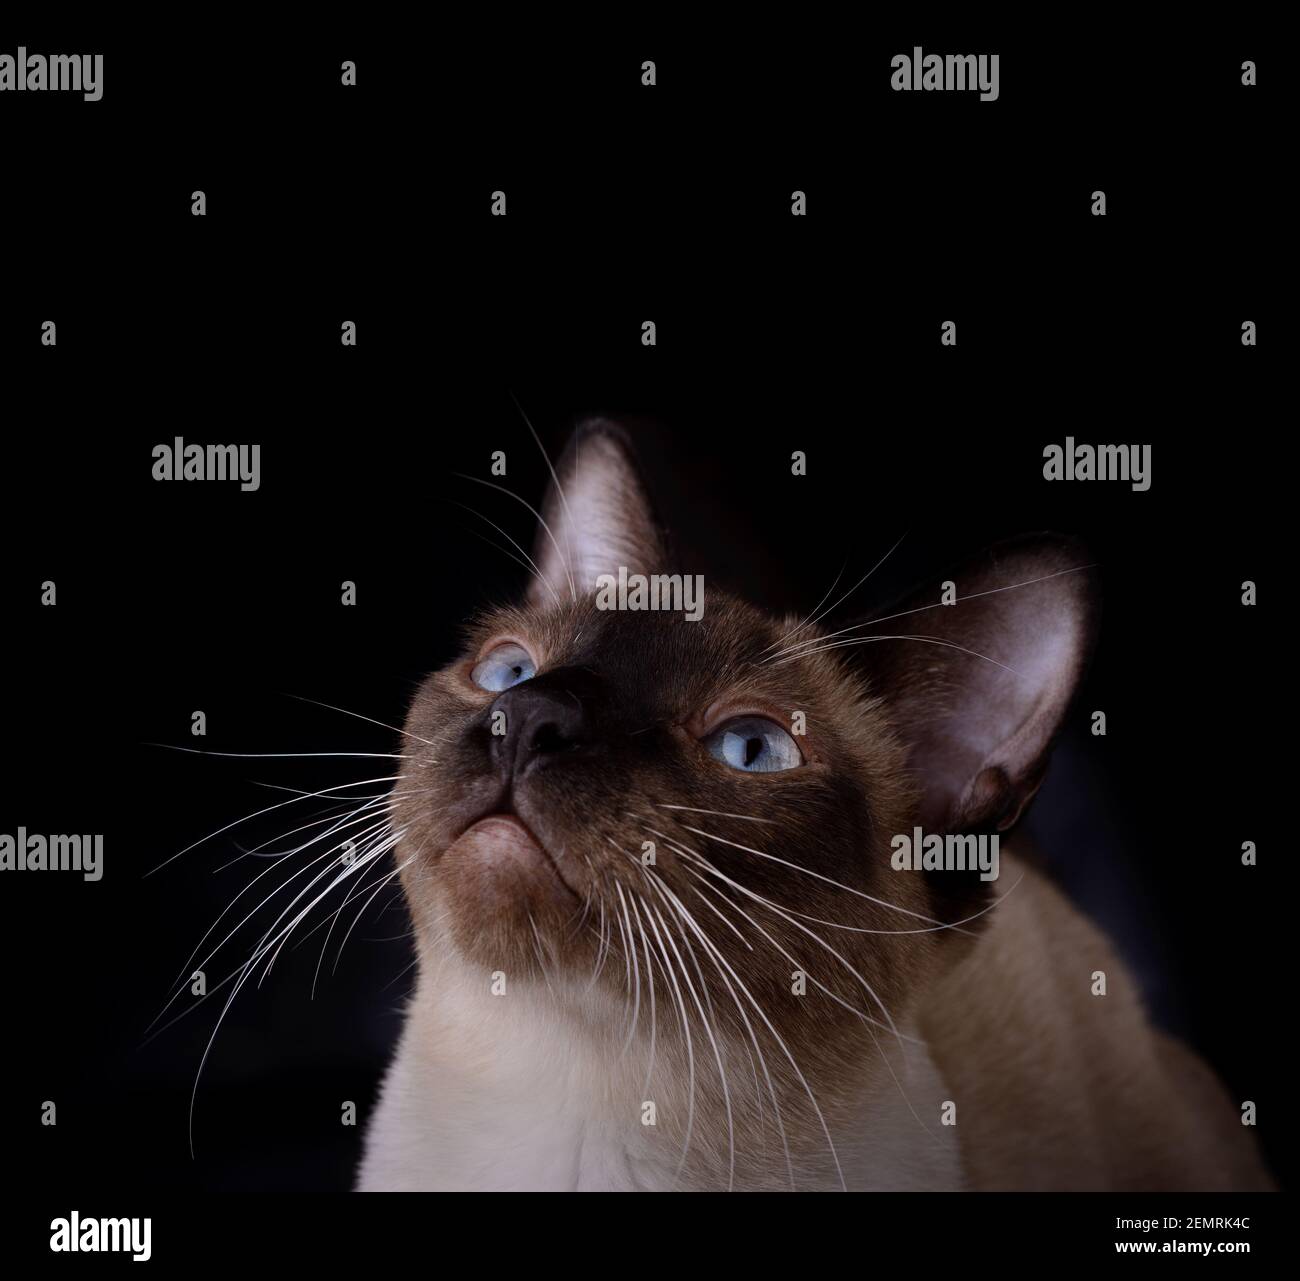 Guapo gato siamés mirando por encima de él, en el espacio de copia; sobre fondo oscuro Foto de stock